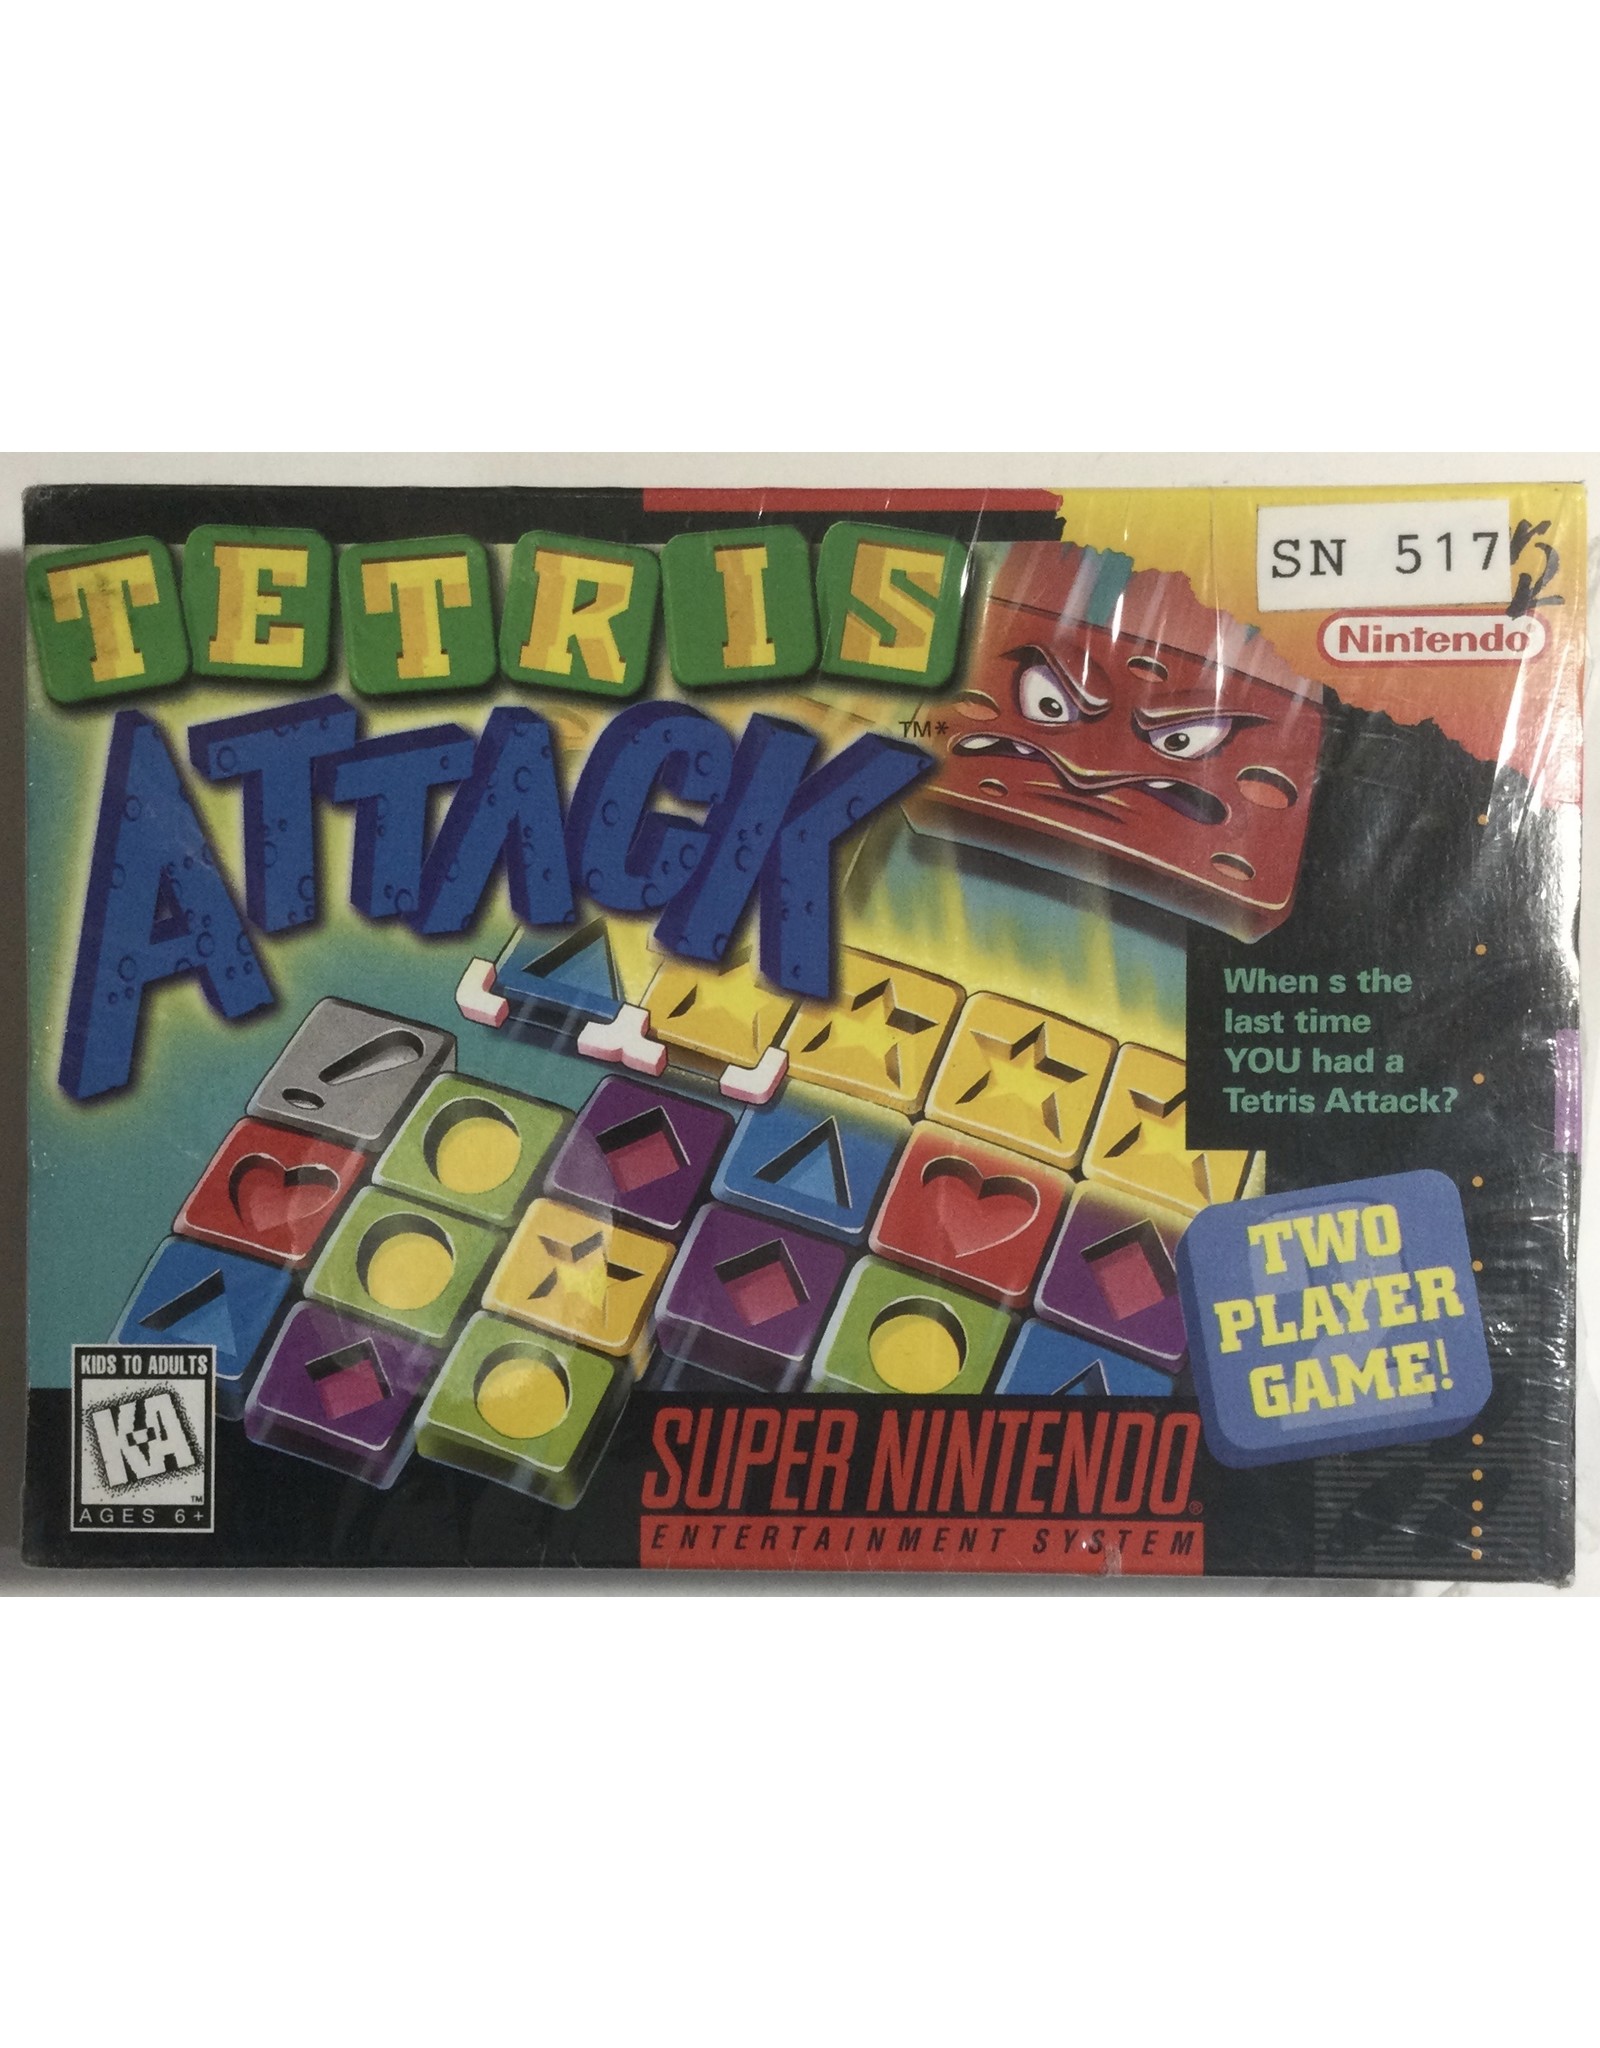 Nintendo Tetris Attack for Super Nintendo Entertainment System (SNES)